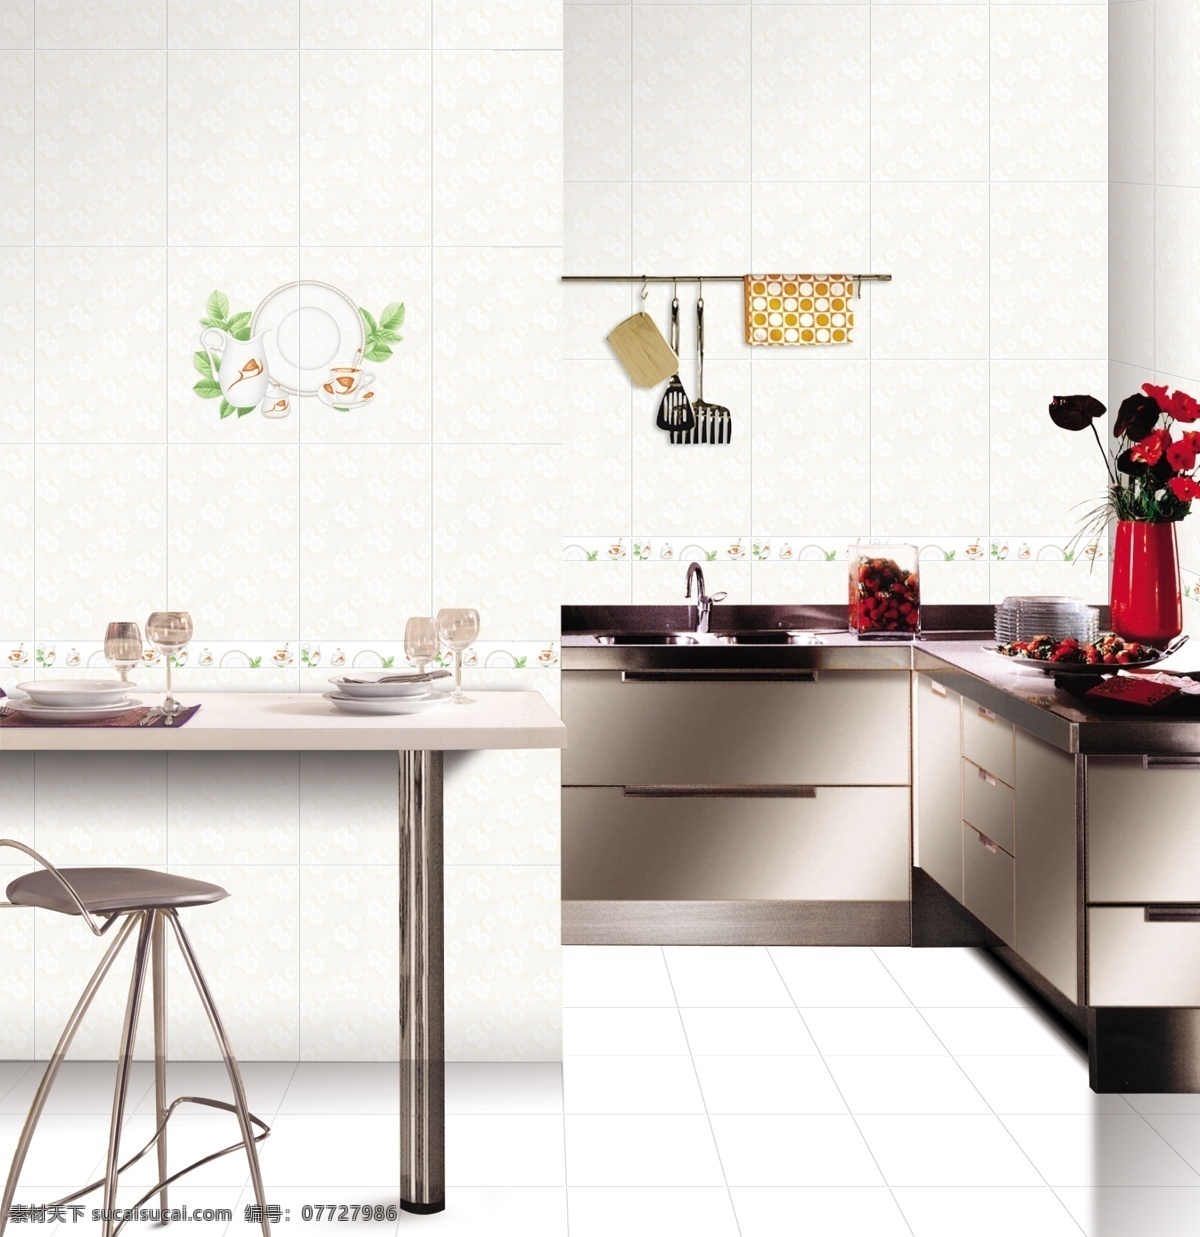 厨房 效果图 厨房效果图 环境设计 室内设计 铺贴图 装饰素材